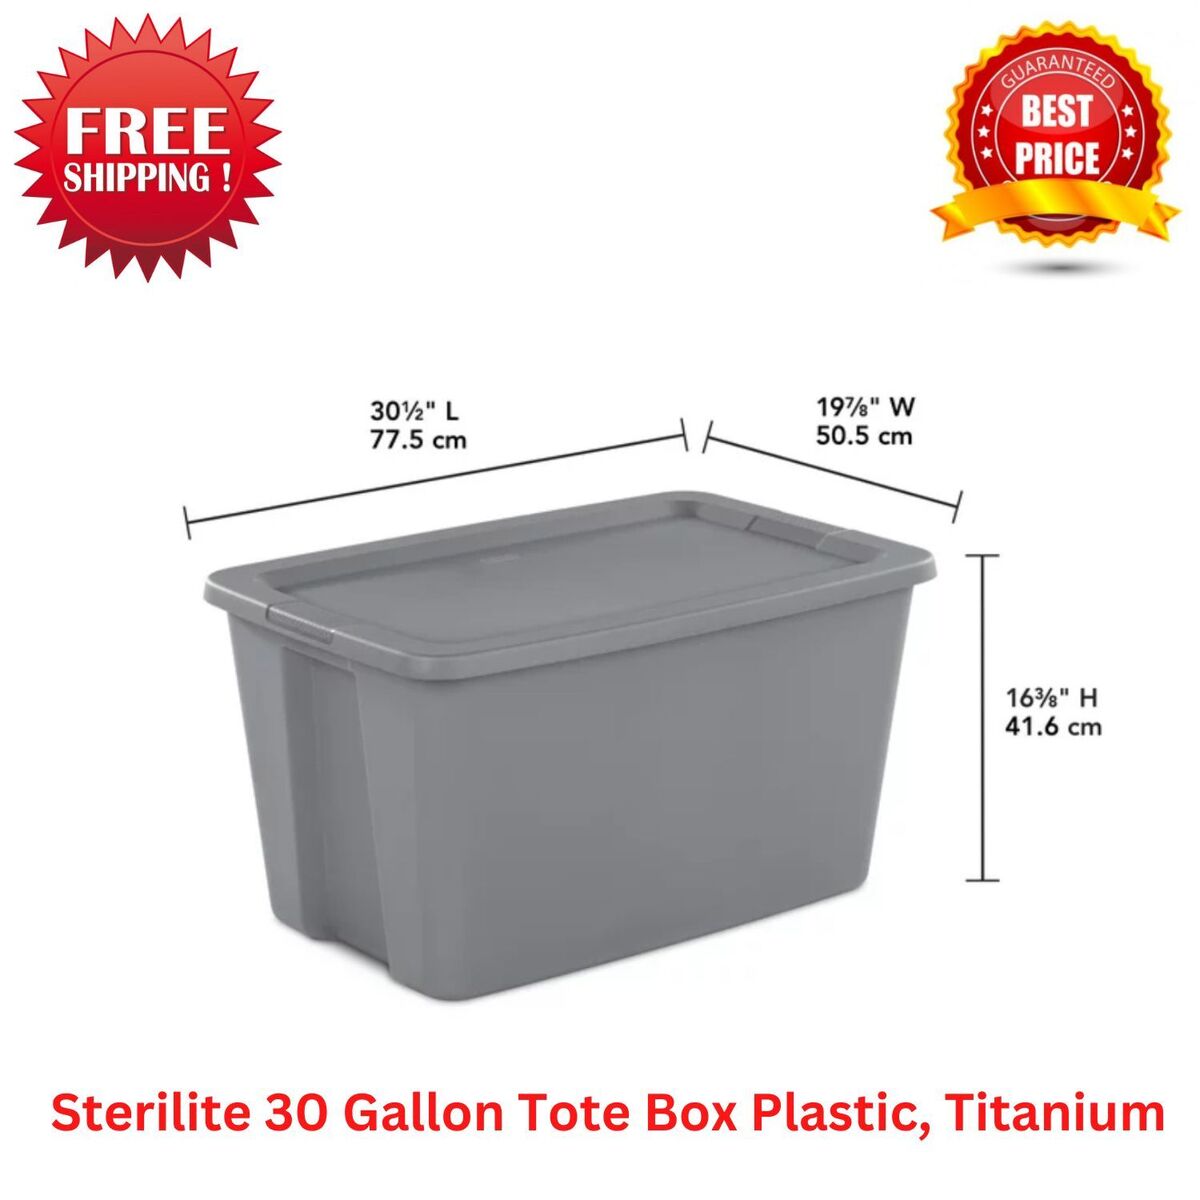 Sterilite 30 Gallon Tote Box Plastic, Titanium